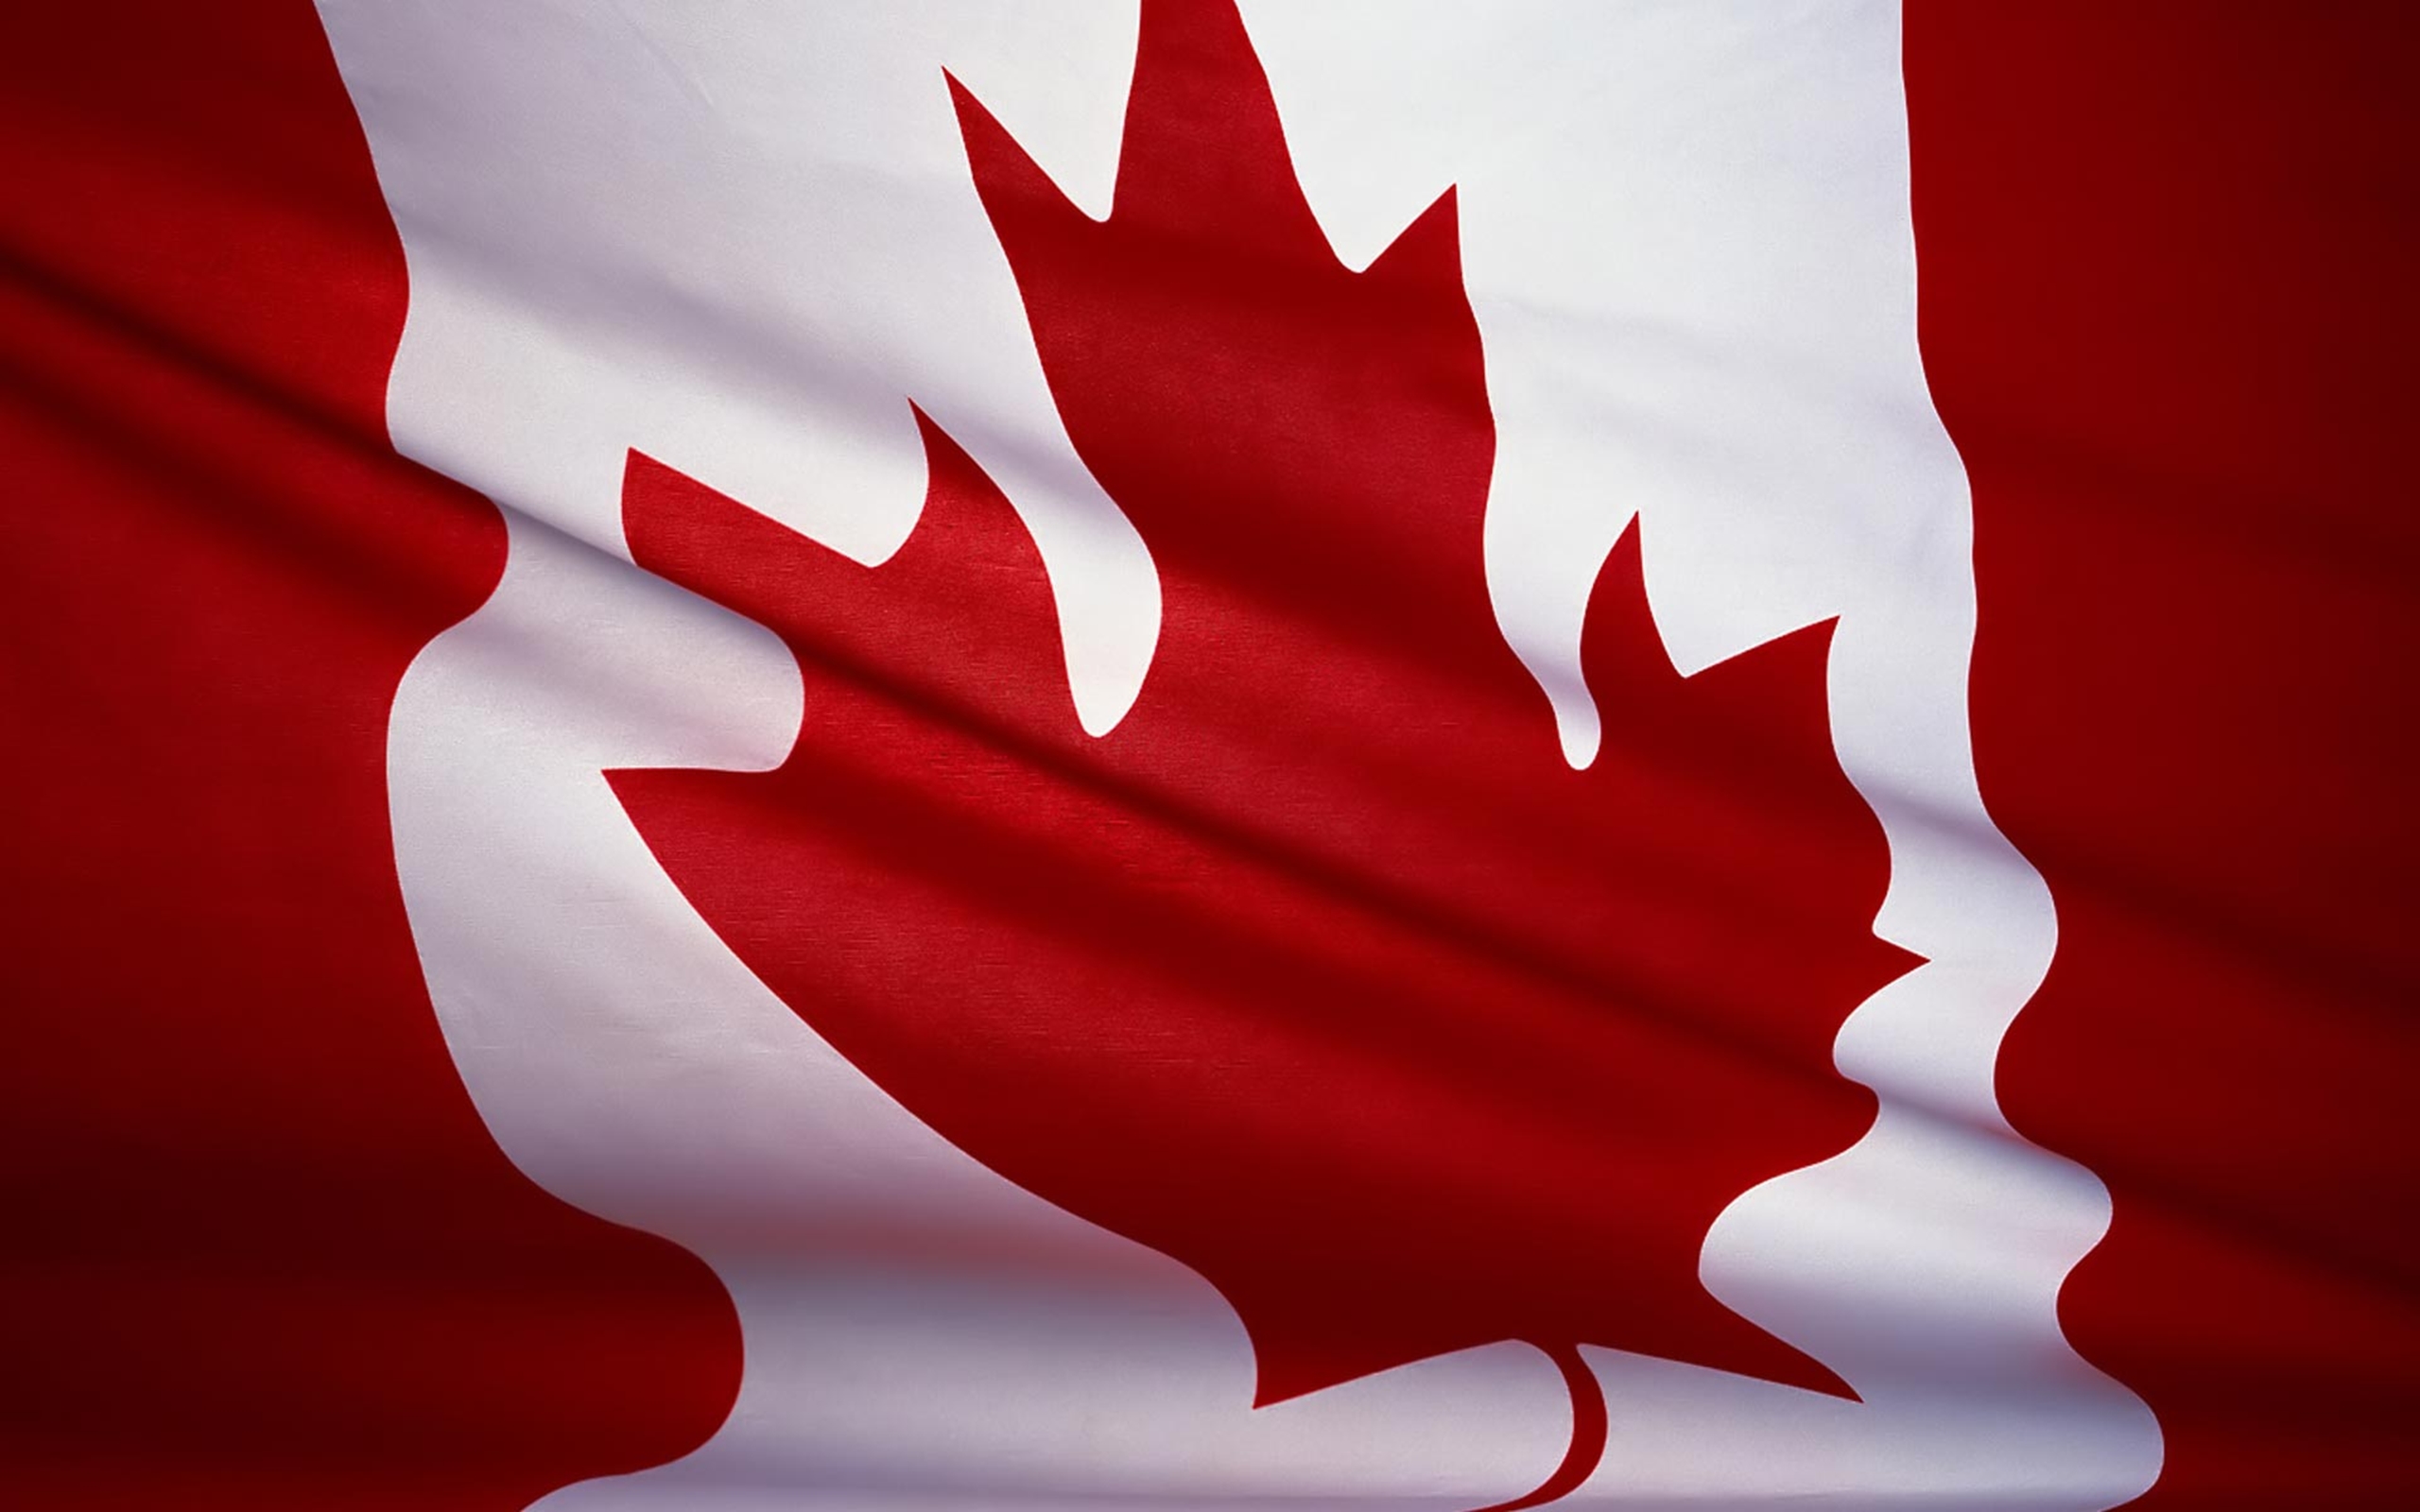 Flag Of Canada HD Wallpaper